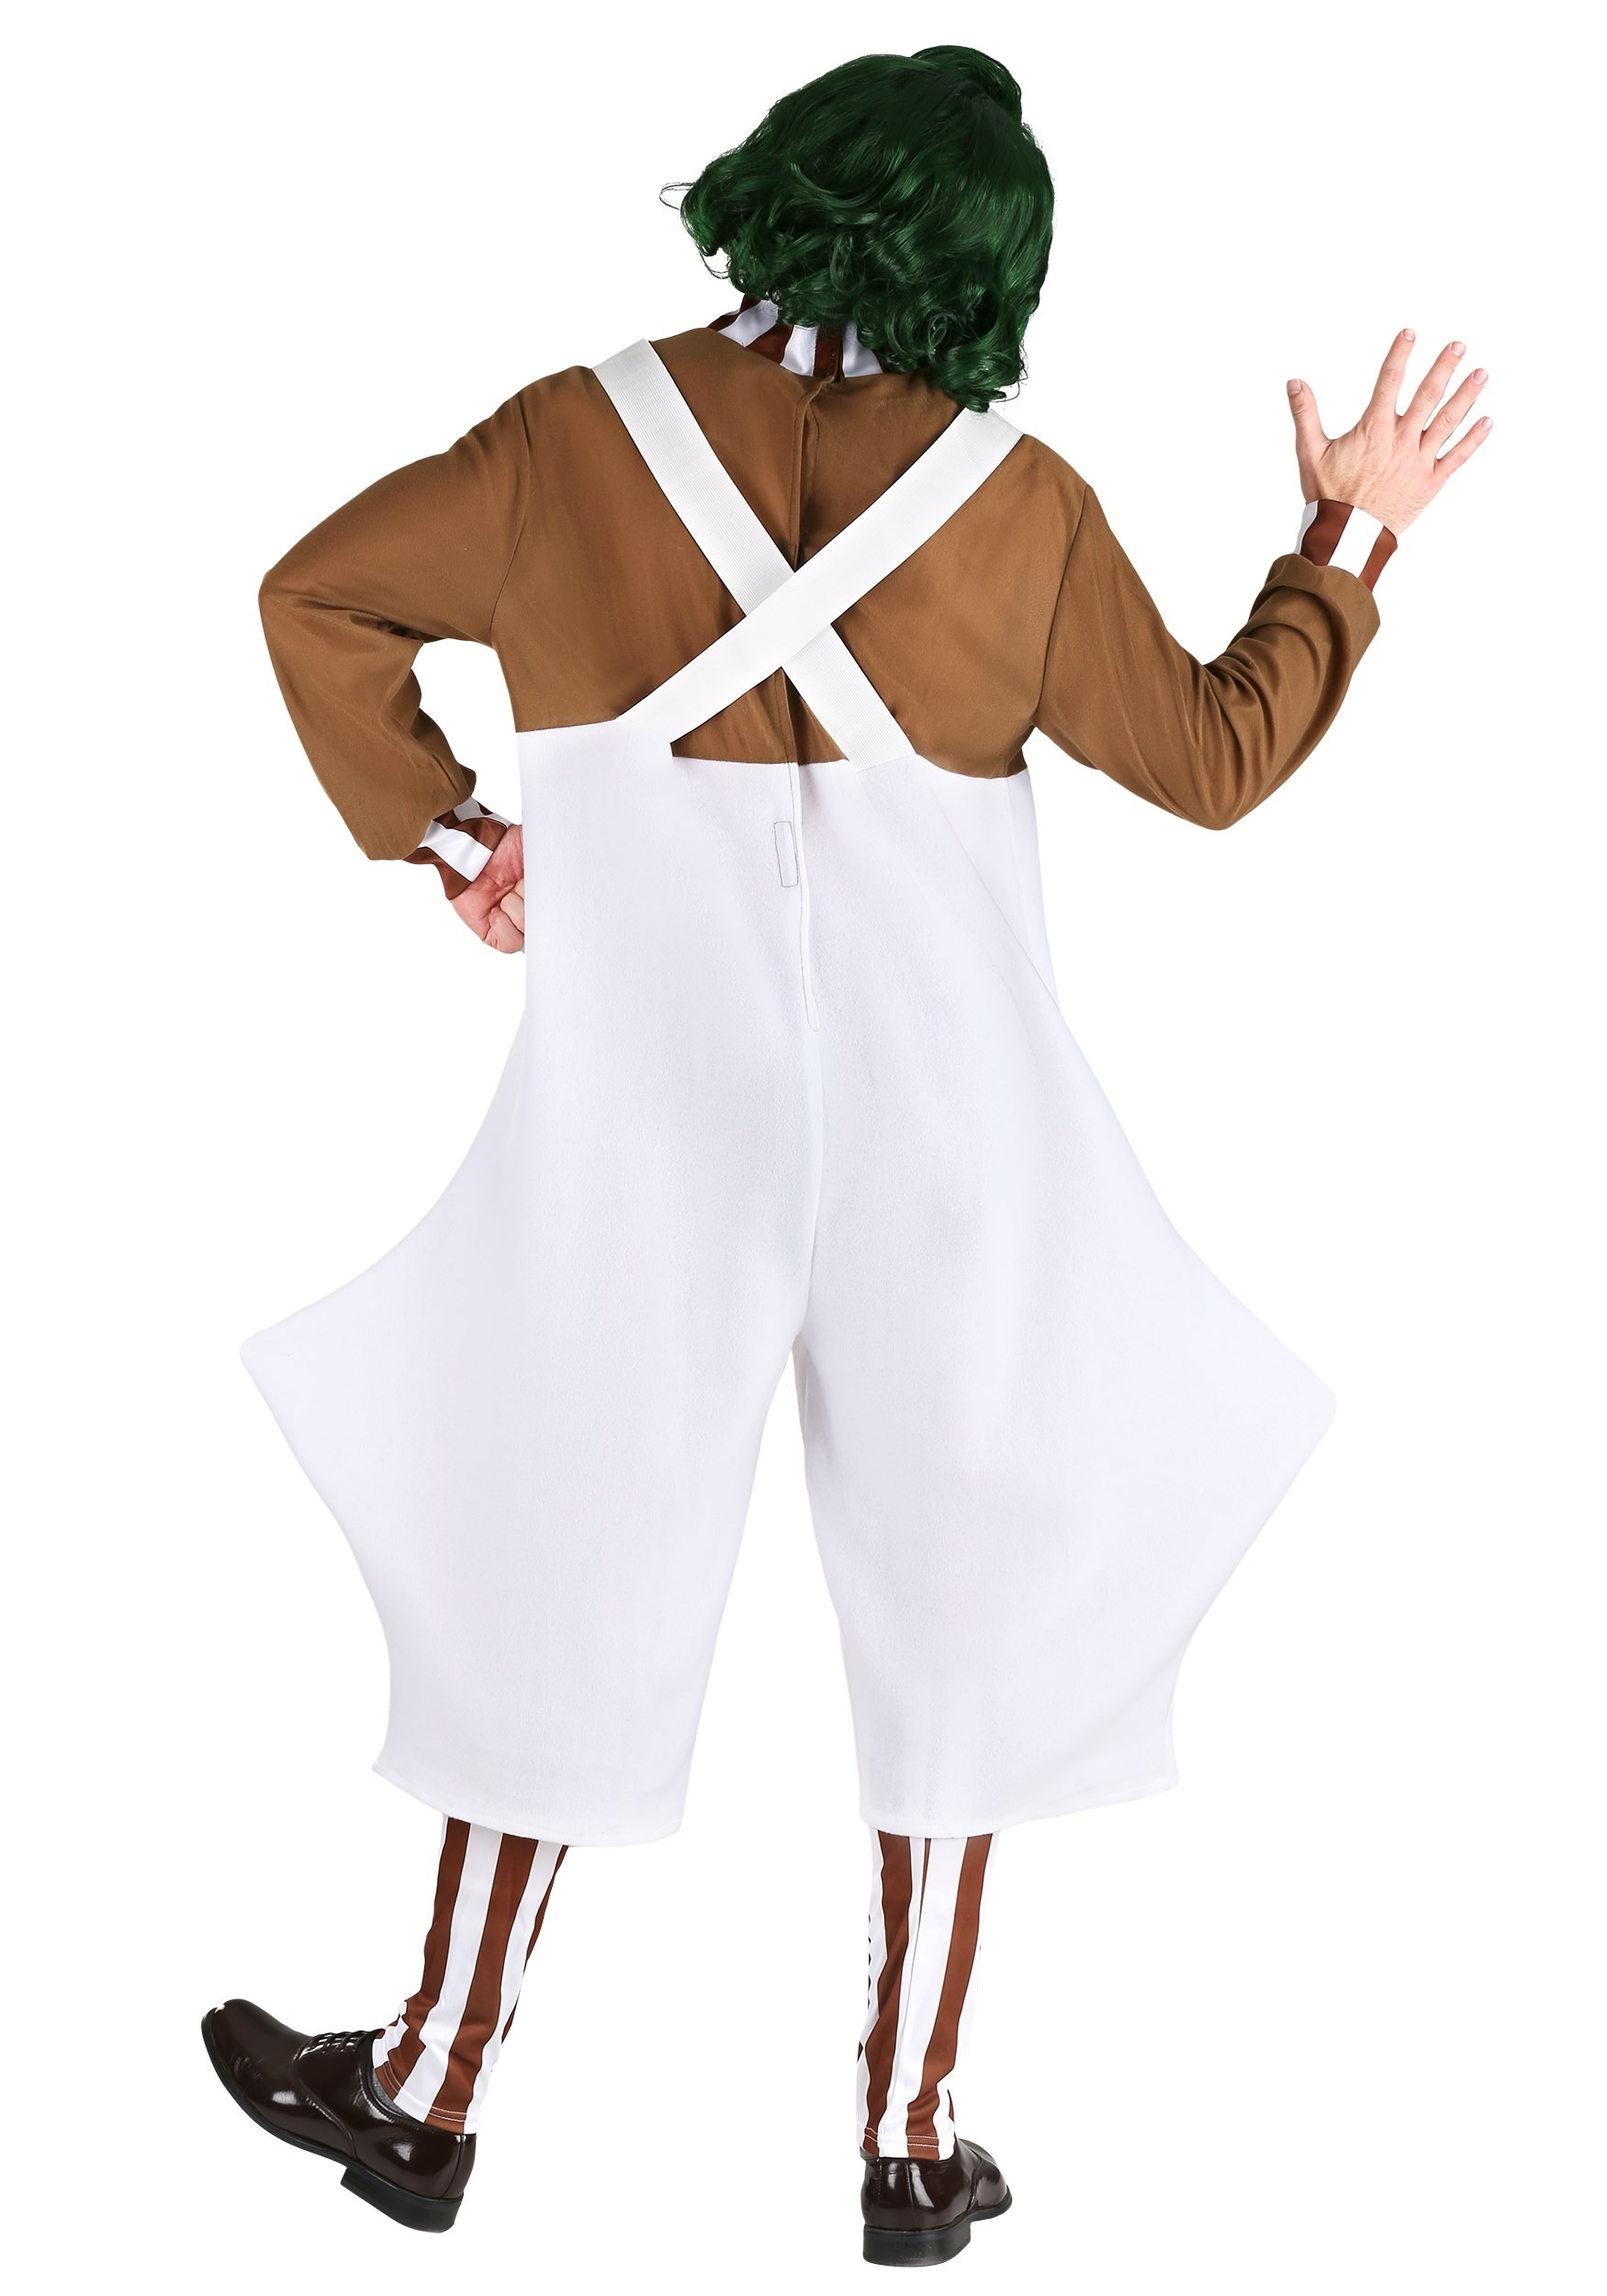 Deluxe Men's Oompa Loompa Costume